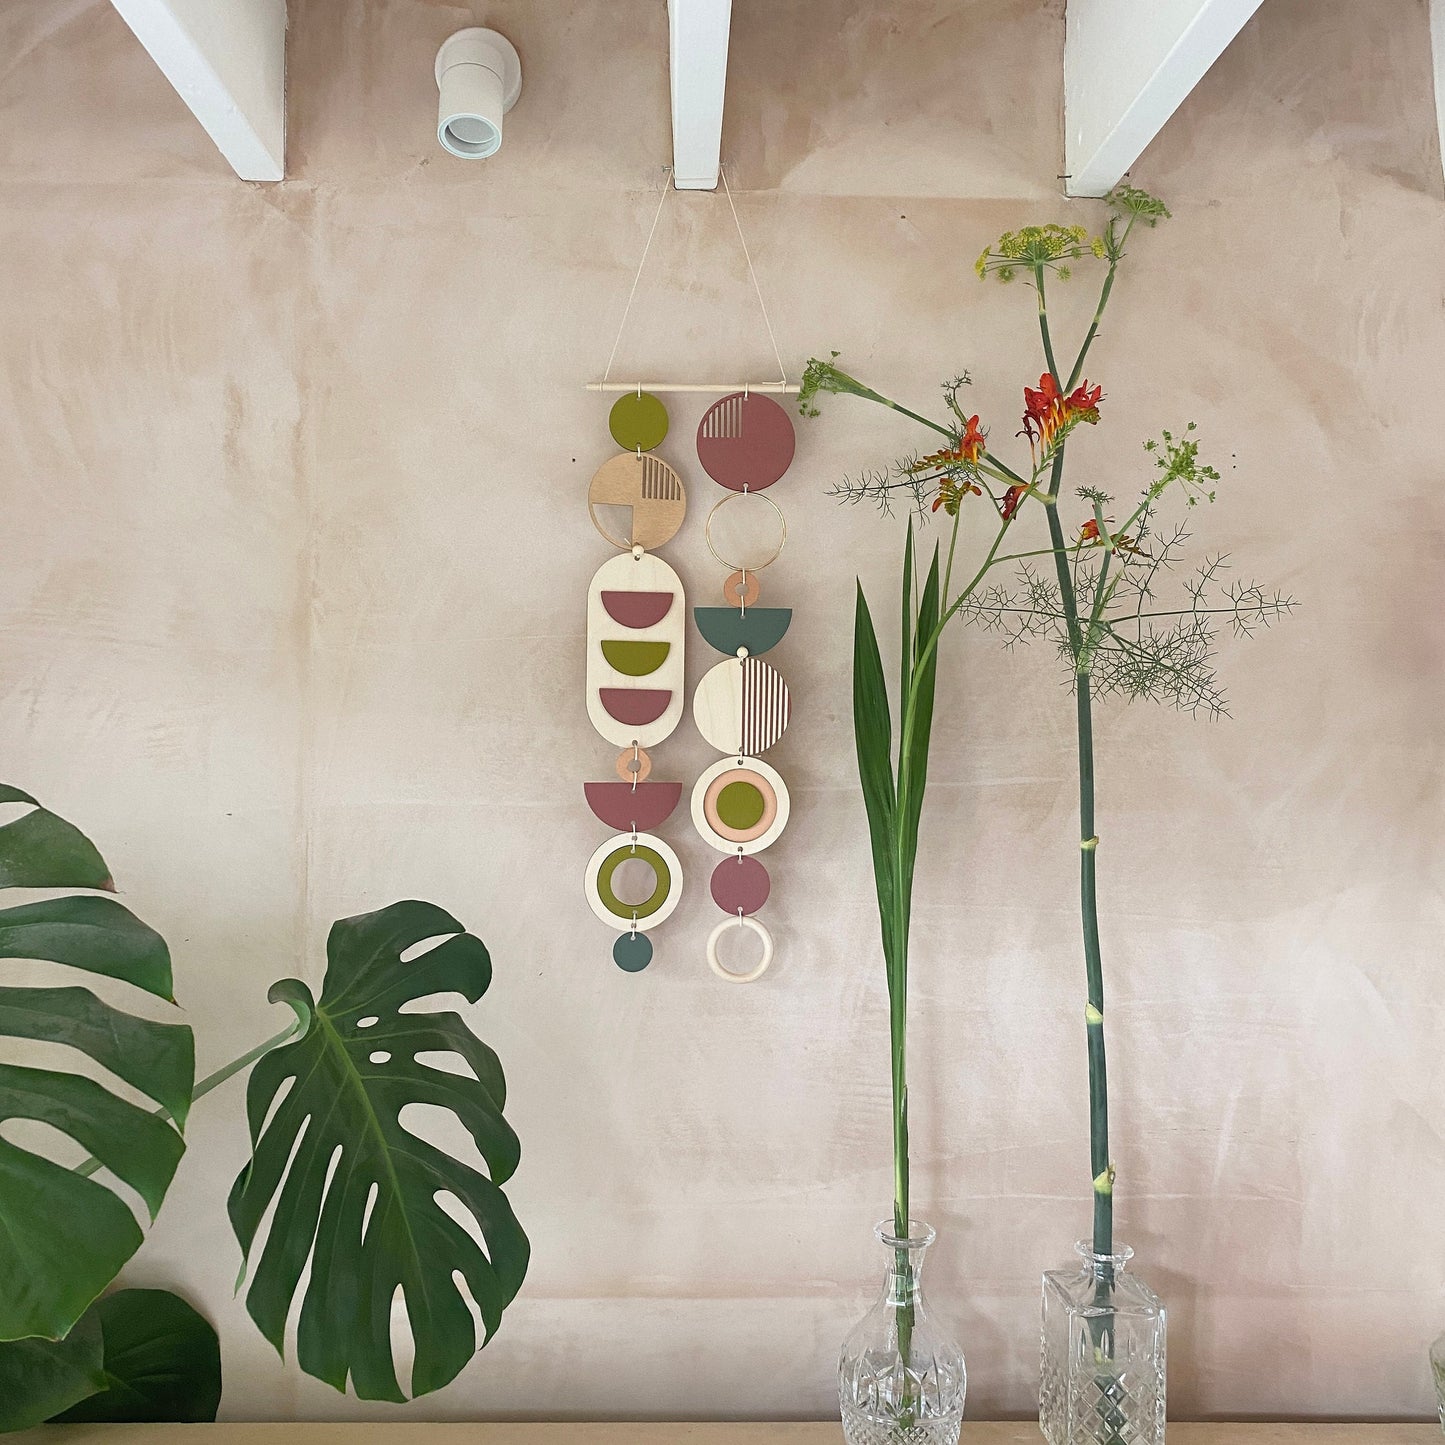 Bold Wall Art - Different Artwork - Minimalist Home Decor - Geometric Art